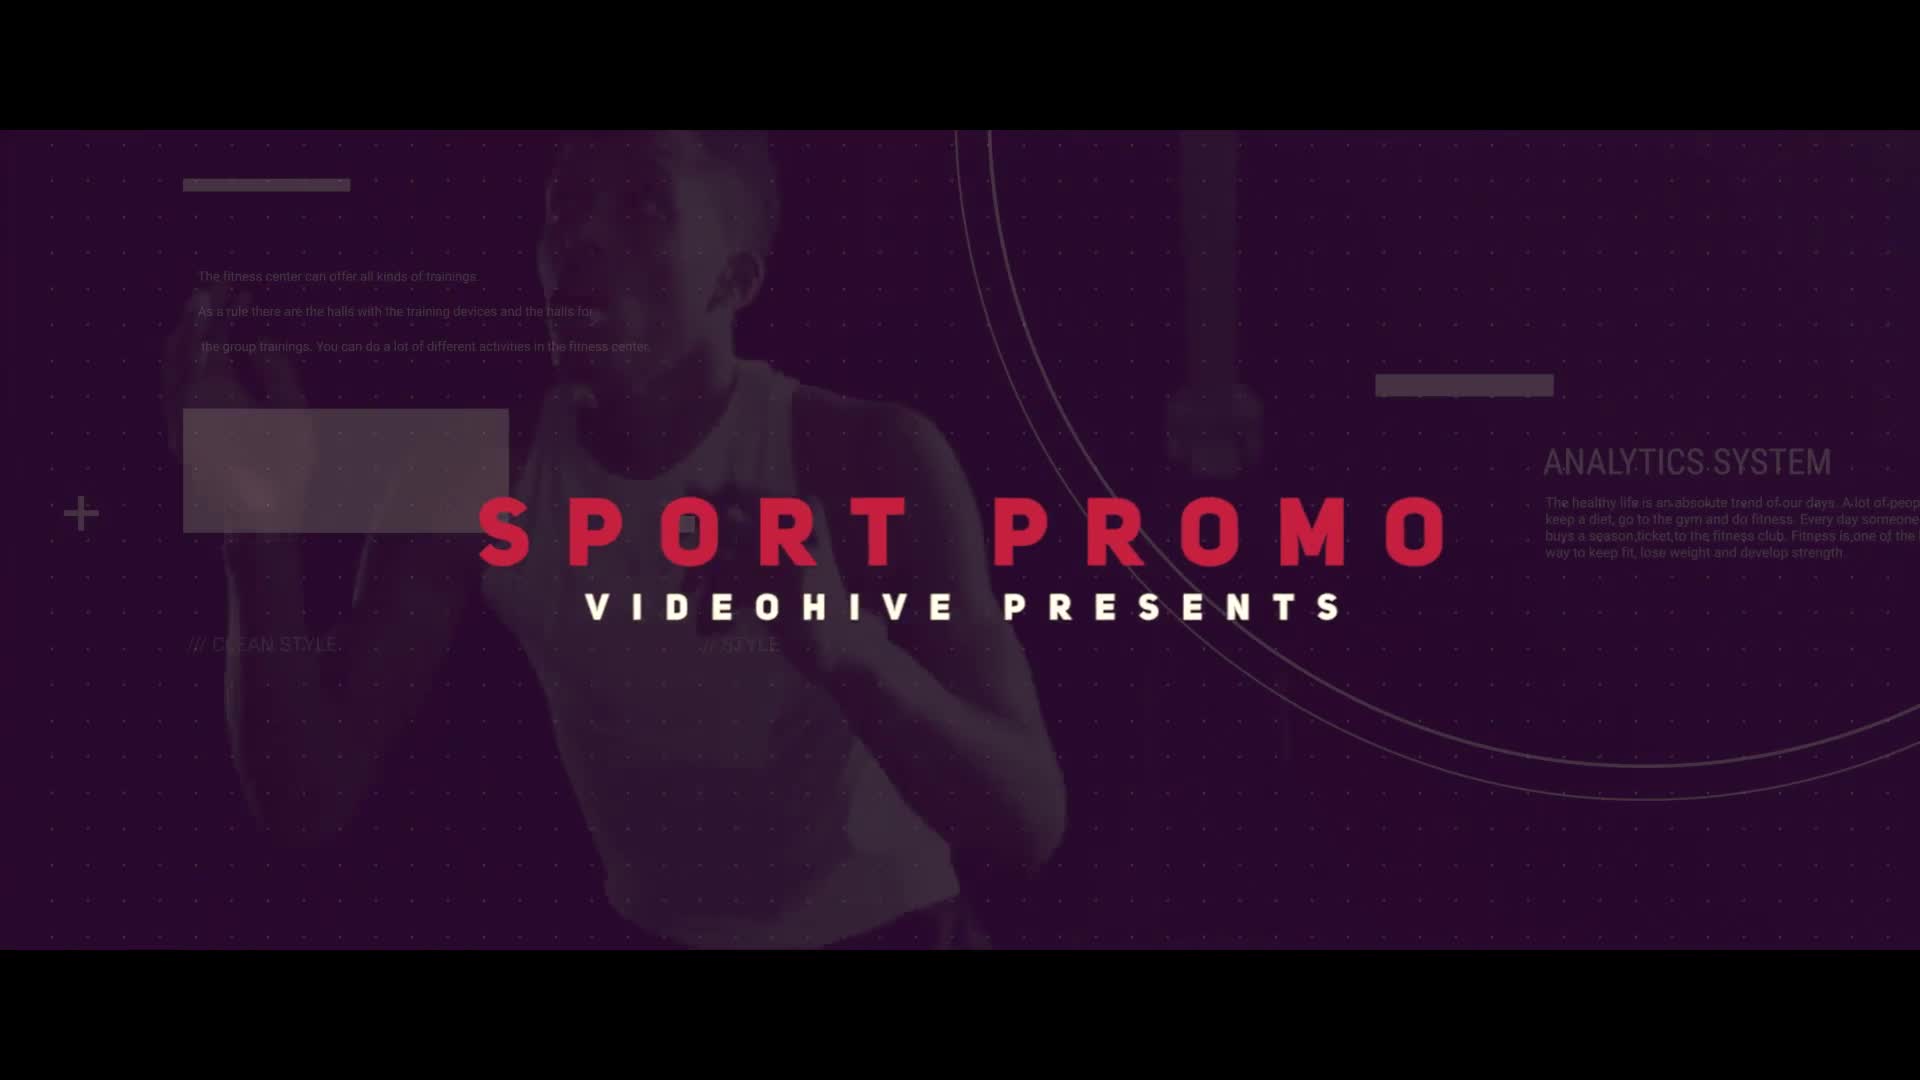 Sport Promo Videohive 21672219 Premiere Pro Image 1